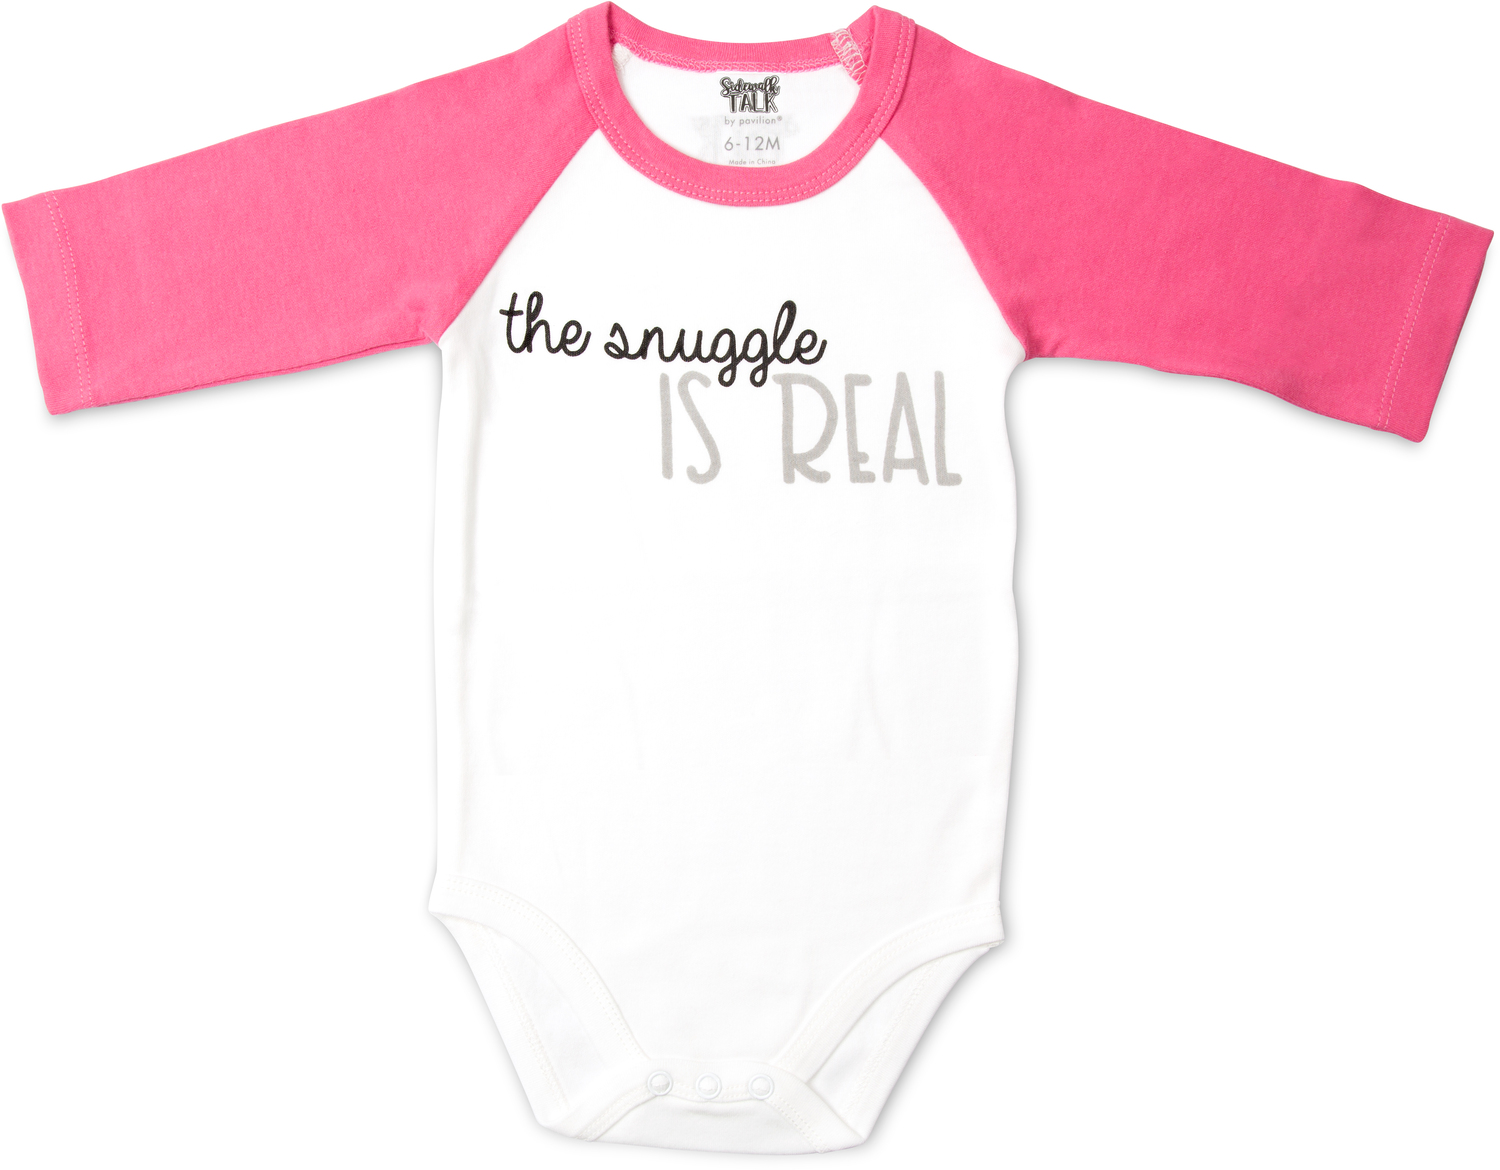 Snuggle by Sidewalk Talk - Snuggle - 6-12 Months 3/4 Length Pink Sleeve Onesie